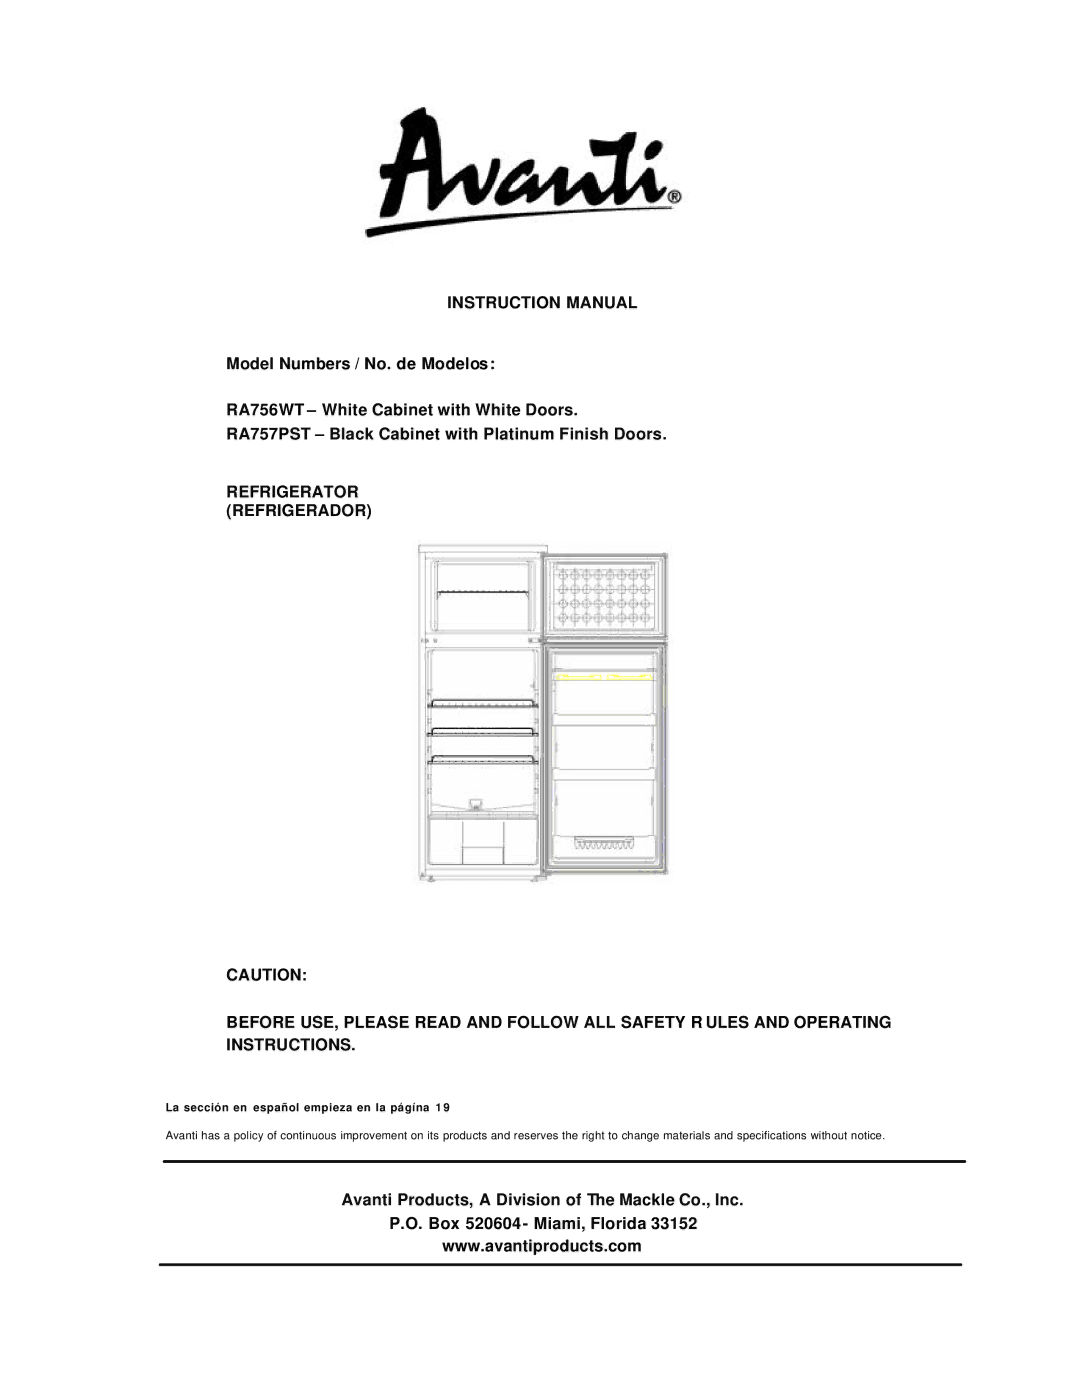 Avanti RA757PST instruction manual La sección en español empieza en la págína 1 